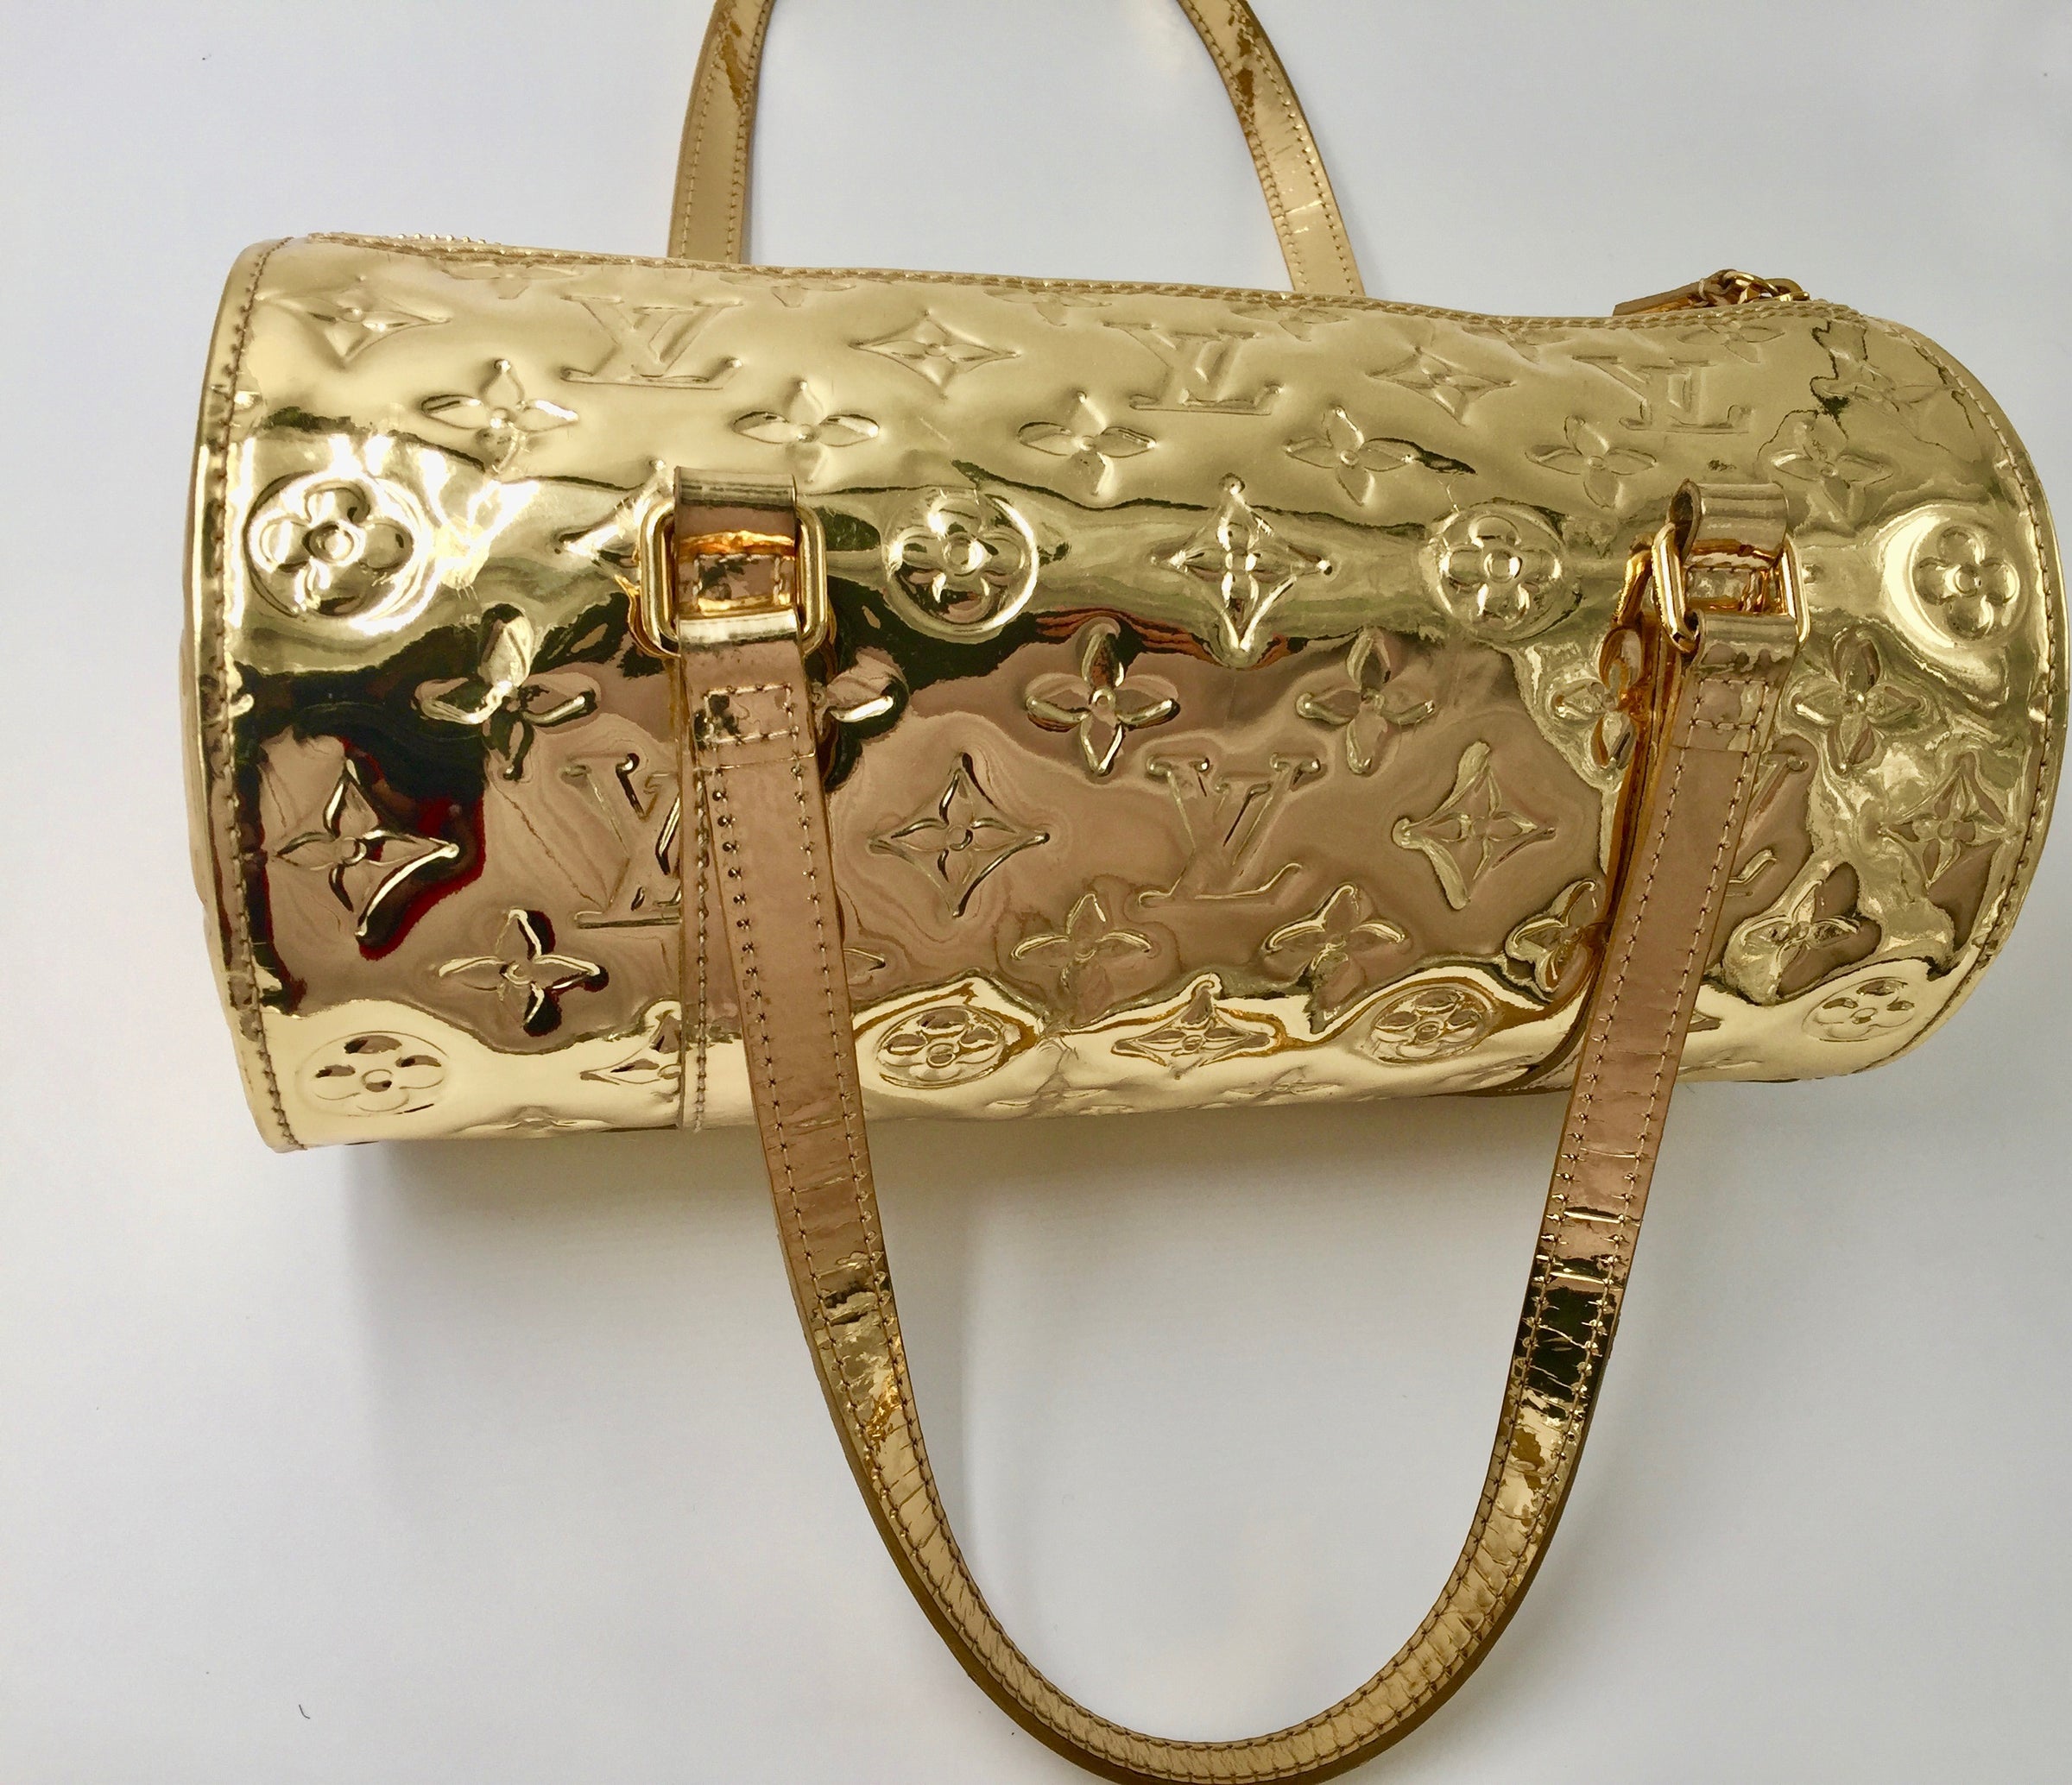 LOUIS VUITTON M95270 Monogram Miroir Papillon PM Hand Bag Gold